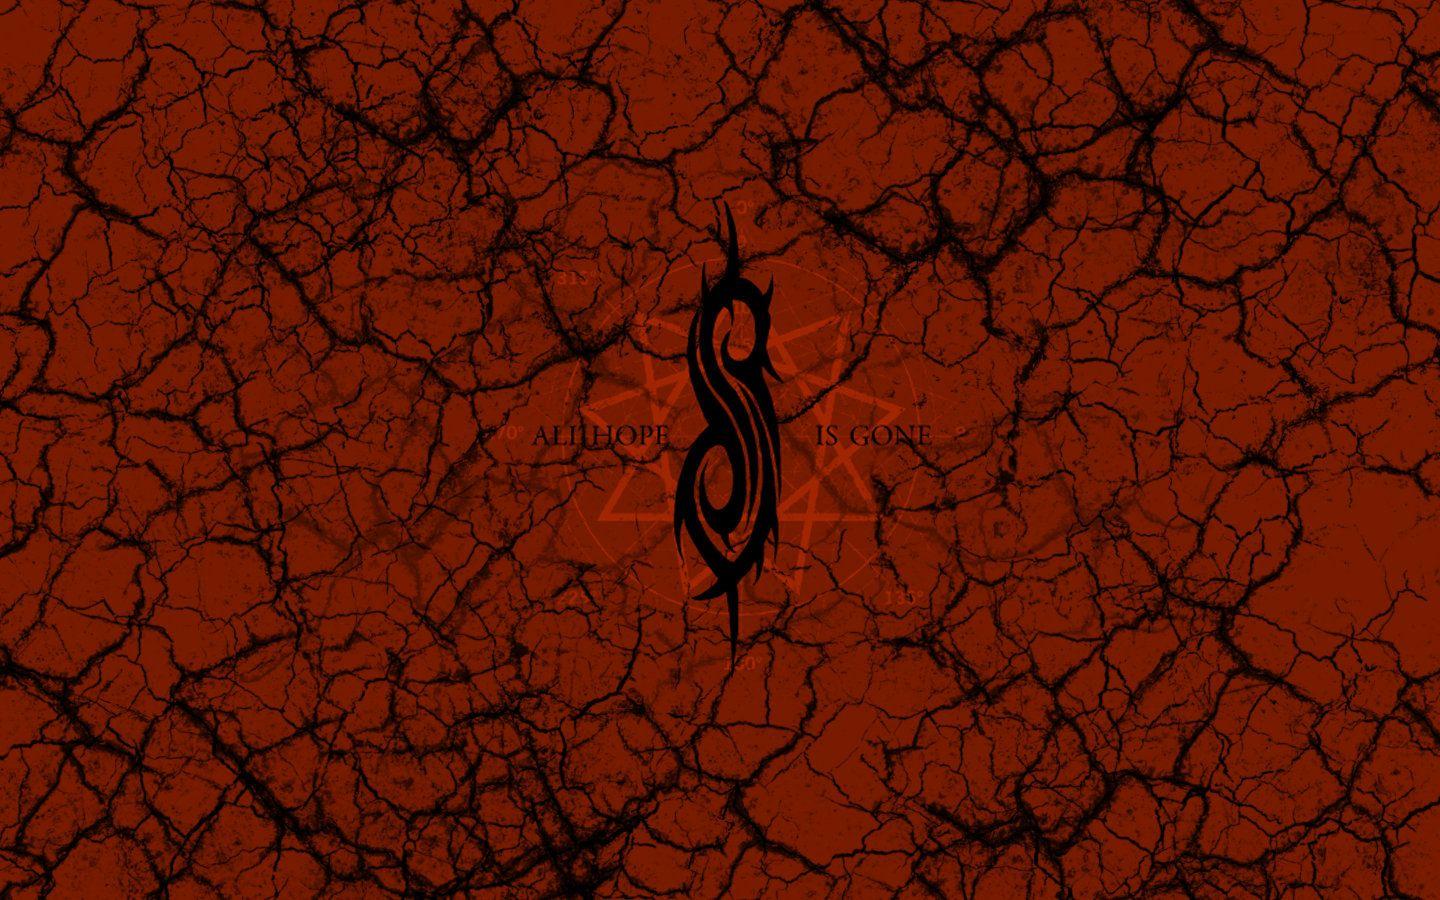 Slipknot: All hope is.Gone